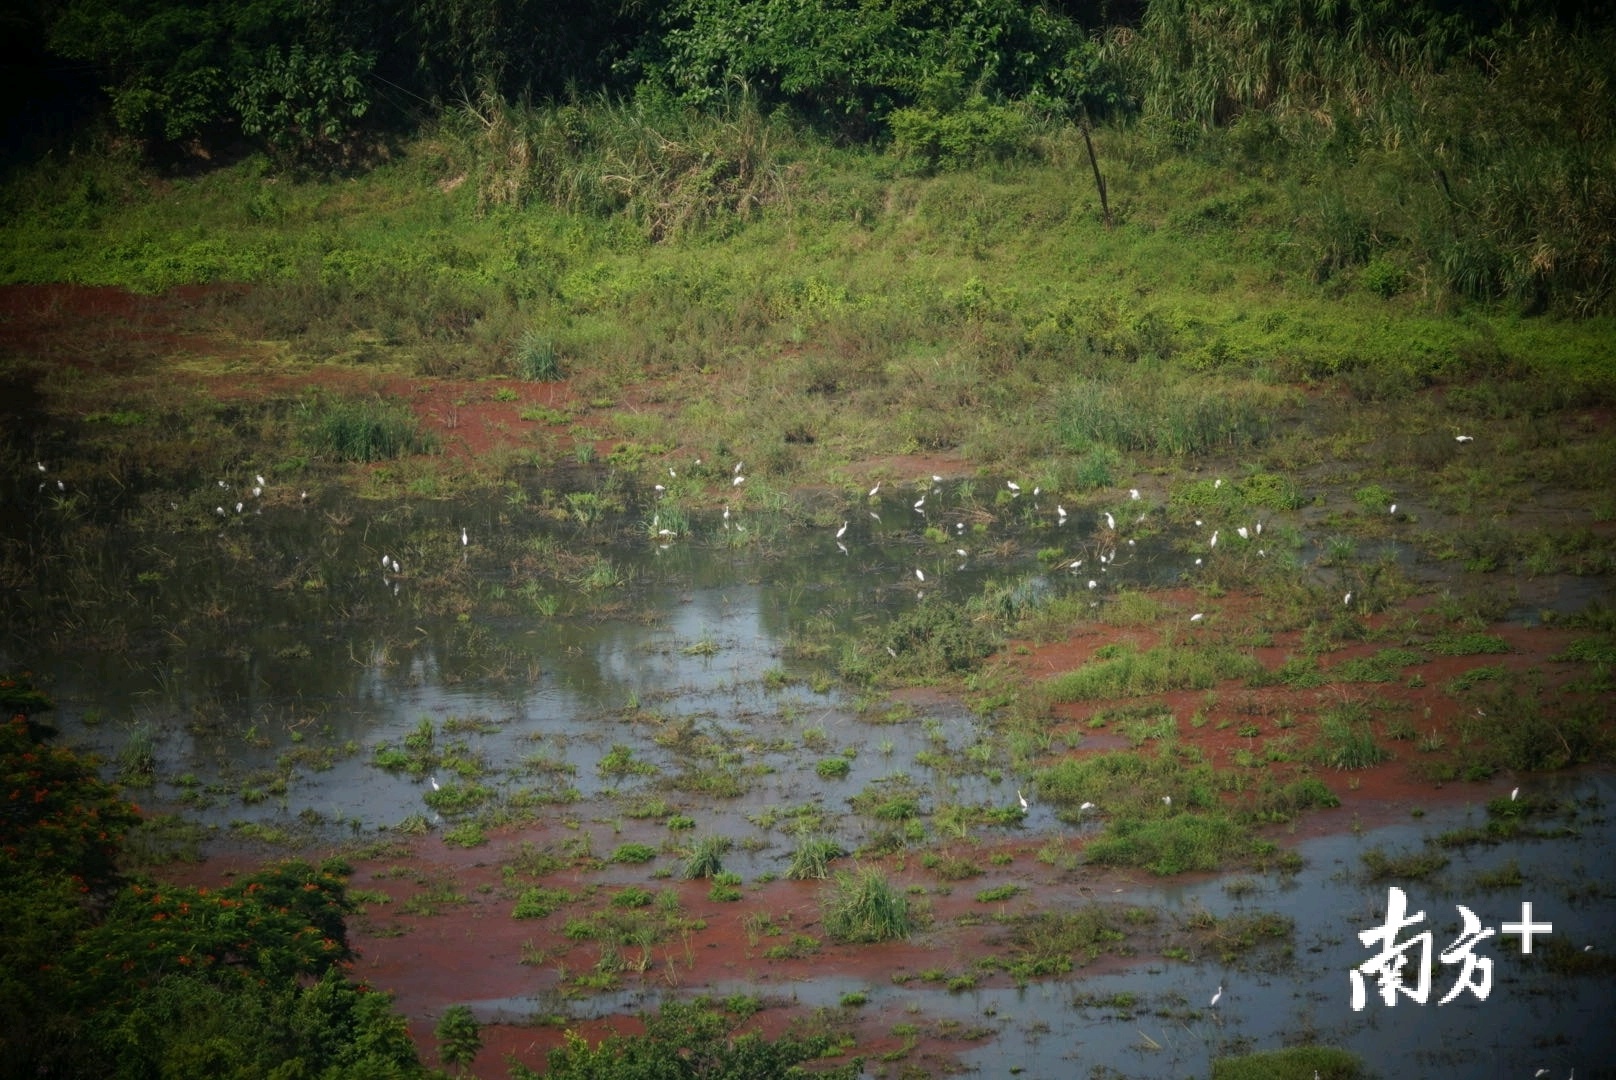 沉香岛的大部分由沙洲和绿地覆盖，每年秋冬季都有大量白鹭在沉香岛上栖息、繁衍。